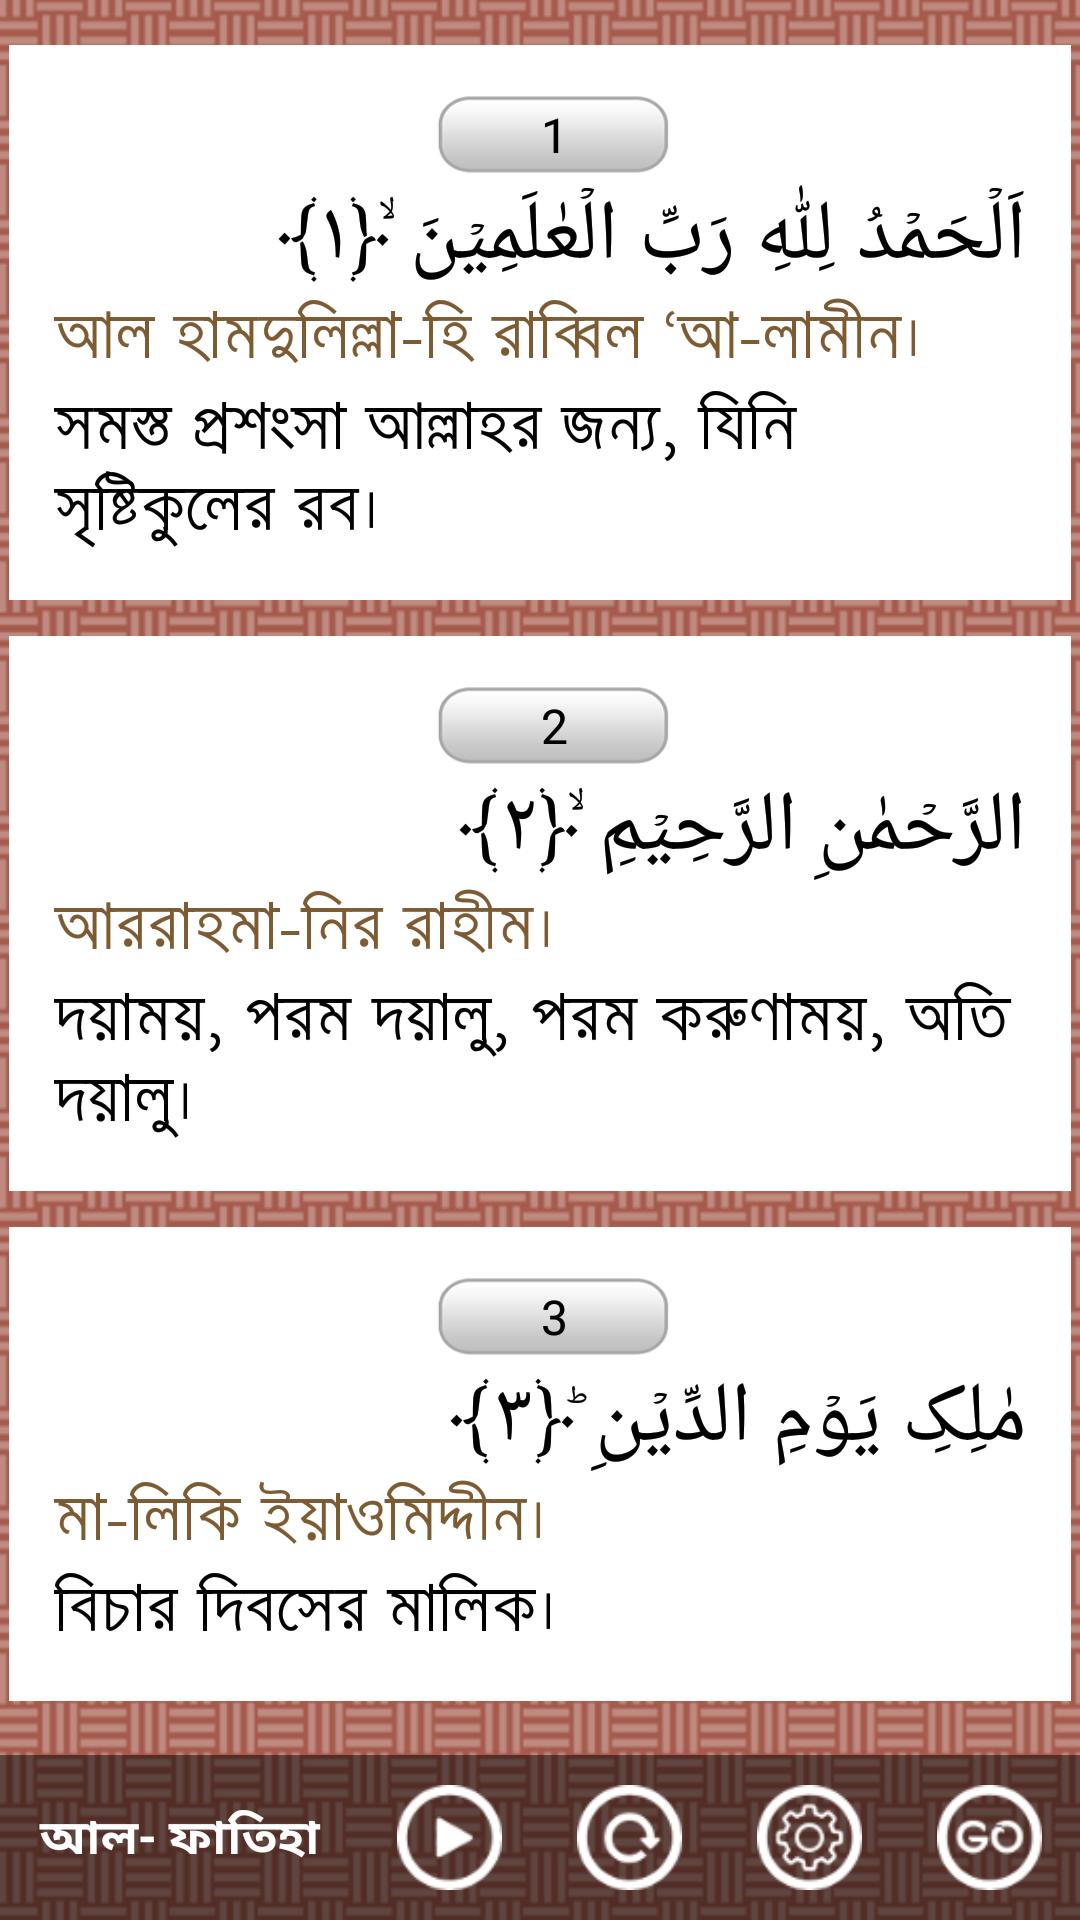 Al-Quran Bangla(Offline Audio) for Android - APK Download